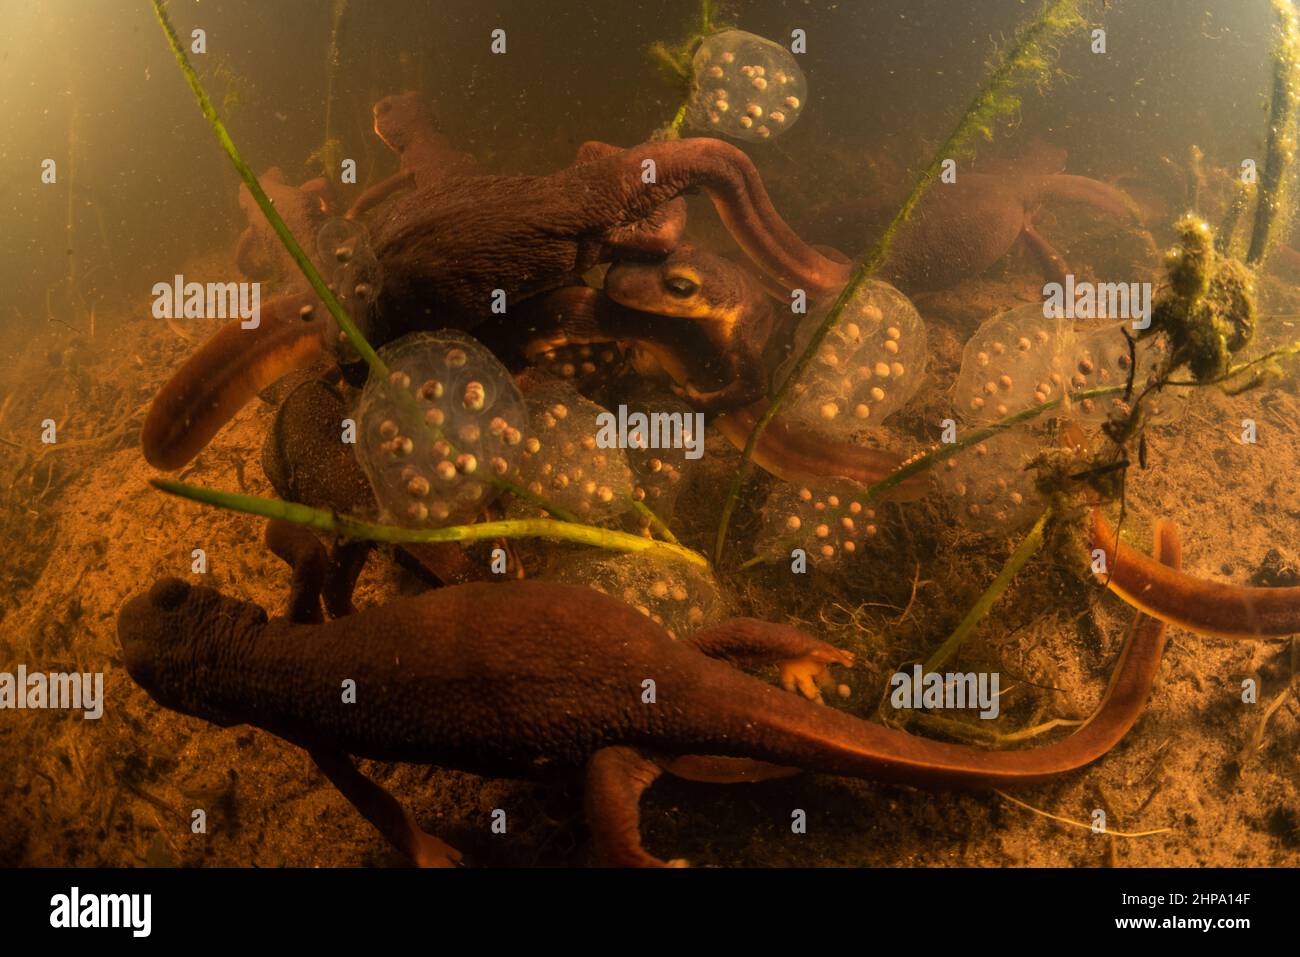 Los recién hechos de California (Taricha torosa) se reúnen para criar y poner huevos en un estanque en CA. Estas salamandras son anfibios y endémicas de la costa oeste. Foto de stock